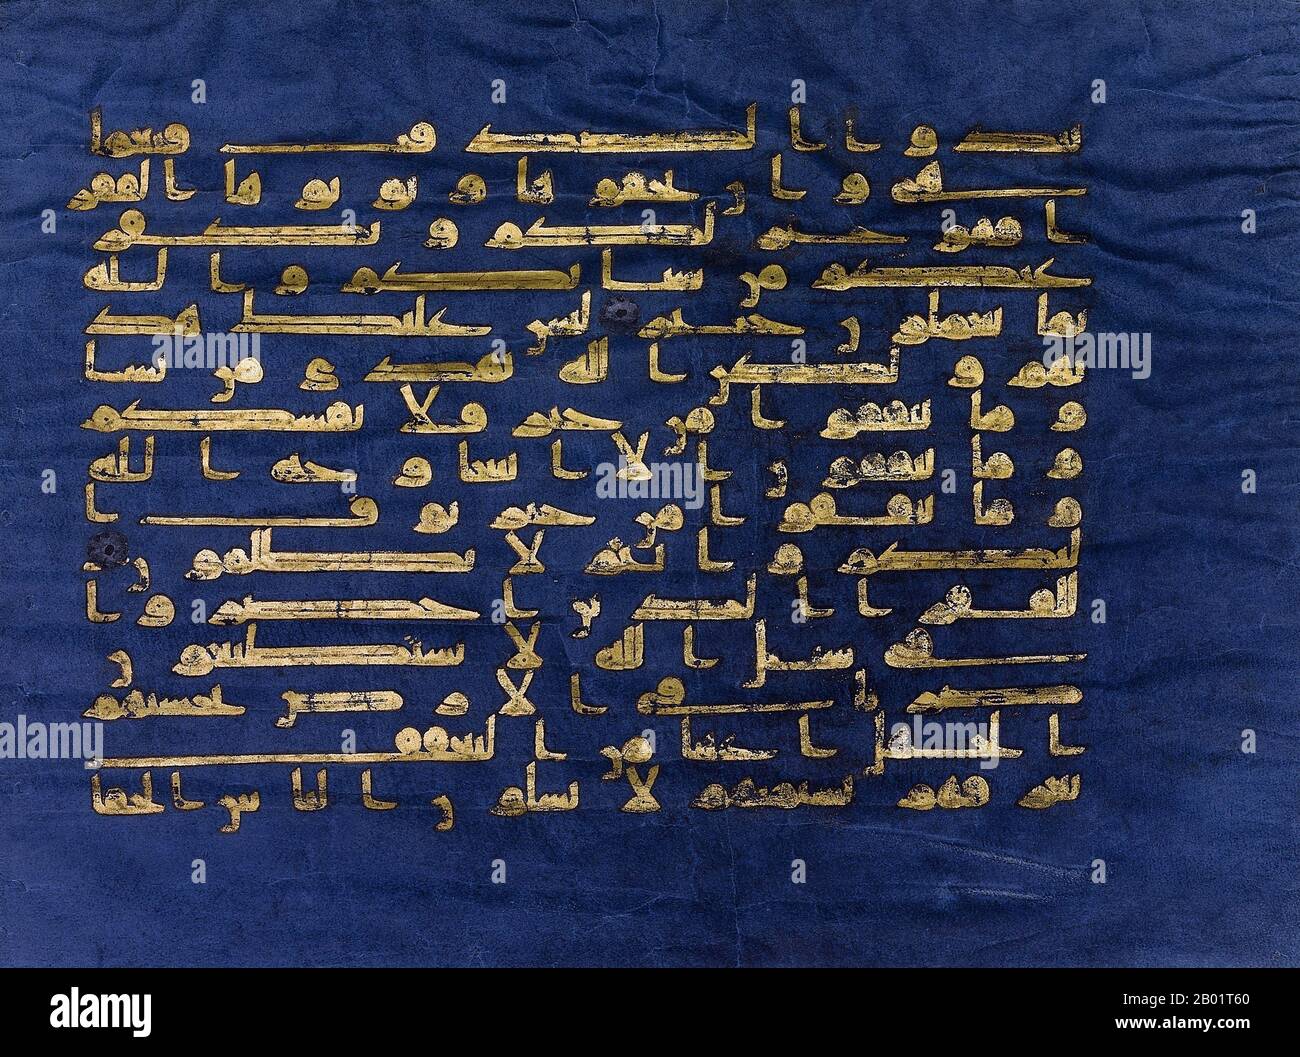 Tunisia: Surah al-Baqarah, versi 197-201, in scrittura cufica. Dal "Blue Coran", Qairawan, Tunisia, 1000 d.C. Il Corano Azzurro è un manoscritto del Corano tunisino della fine del IX - inizio X secolo in calligrafia cufica. È scritto in oro (crisografia) su pergamena morta con indaco, un aspetto unico. È tra le più famose opere d'arte islamica ed è stato definito "uno dei più straordinari manoscritti di lusso mai creati". Il manoscritto fu disperso durante il periodo ottomano; oggi la maggior parte si trova presso l'Istituto Nazionale di Arte e Archeologia di Tunisi. Foto Stock